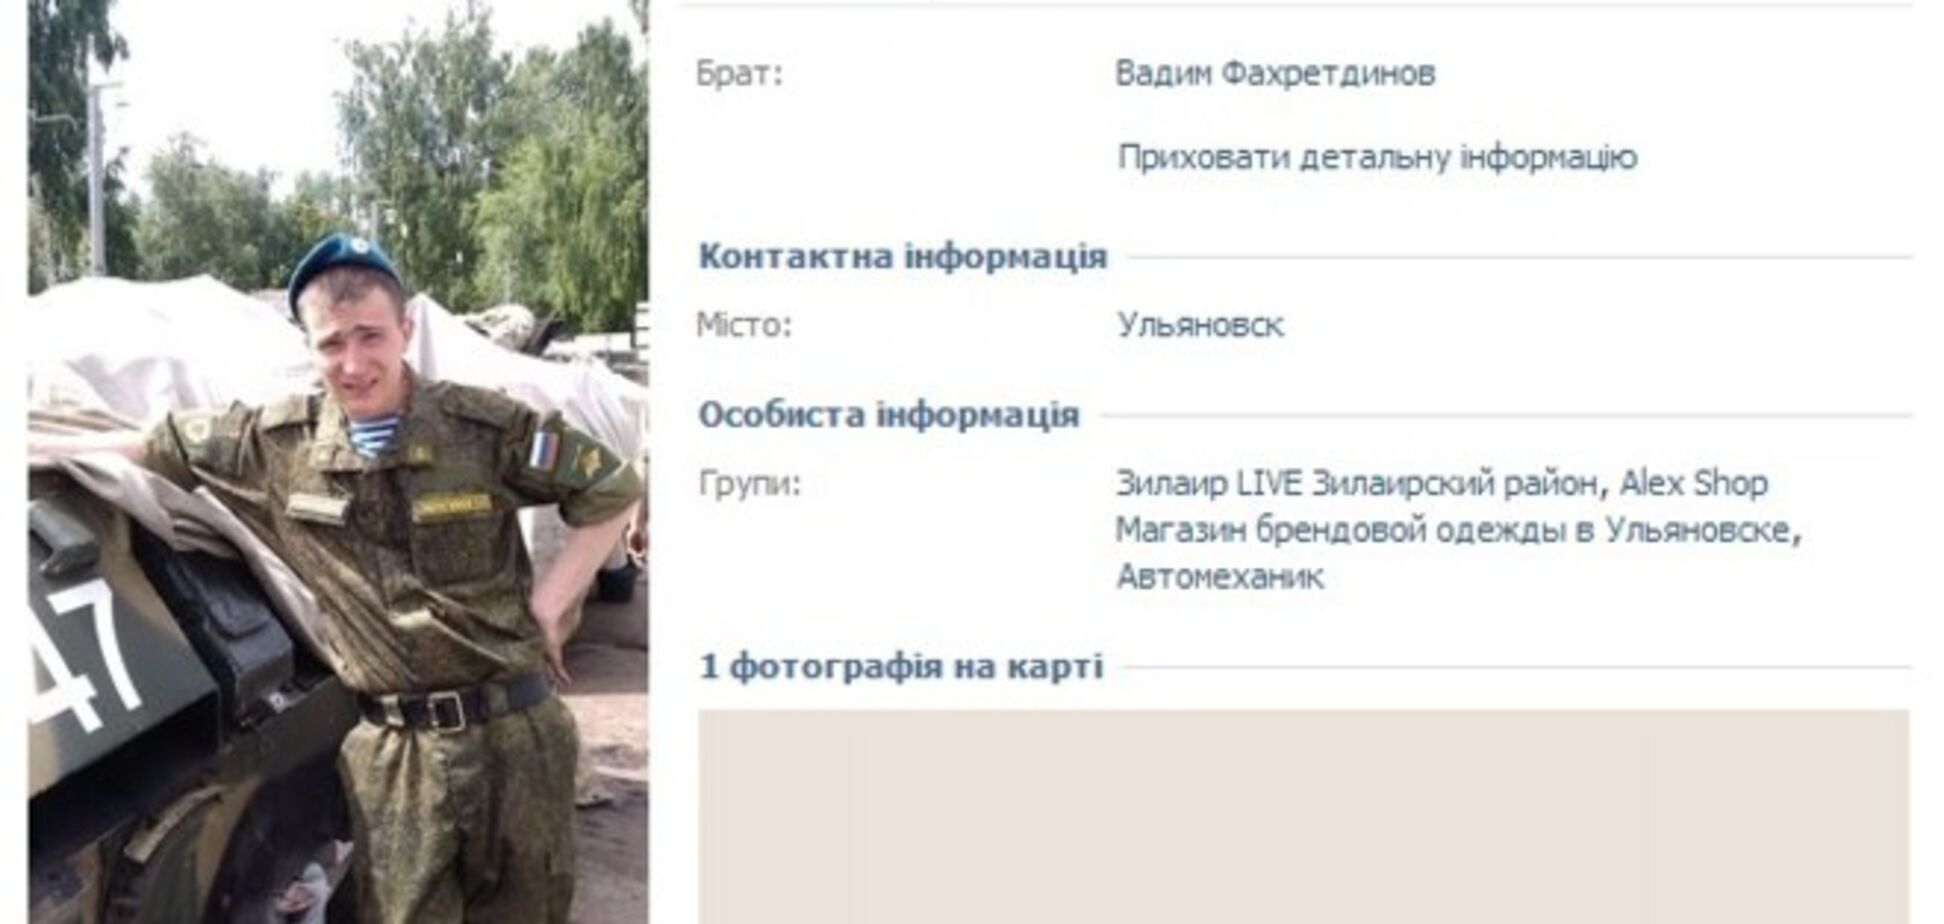 Военные из Пермского края и Ульяновска 'заблудились' в Украине и погибли от ранений